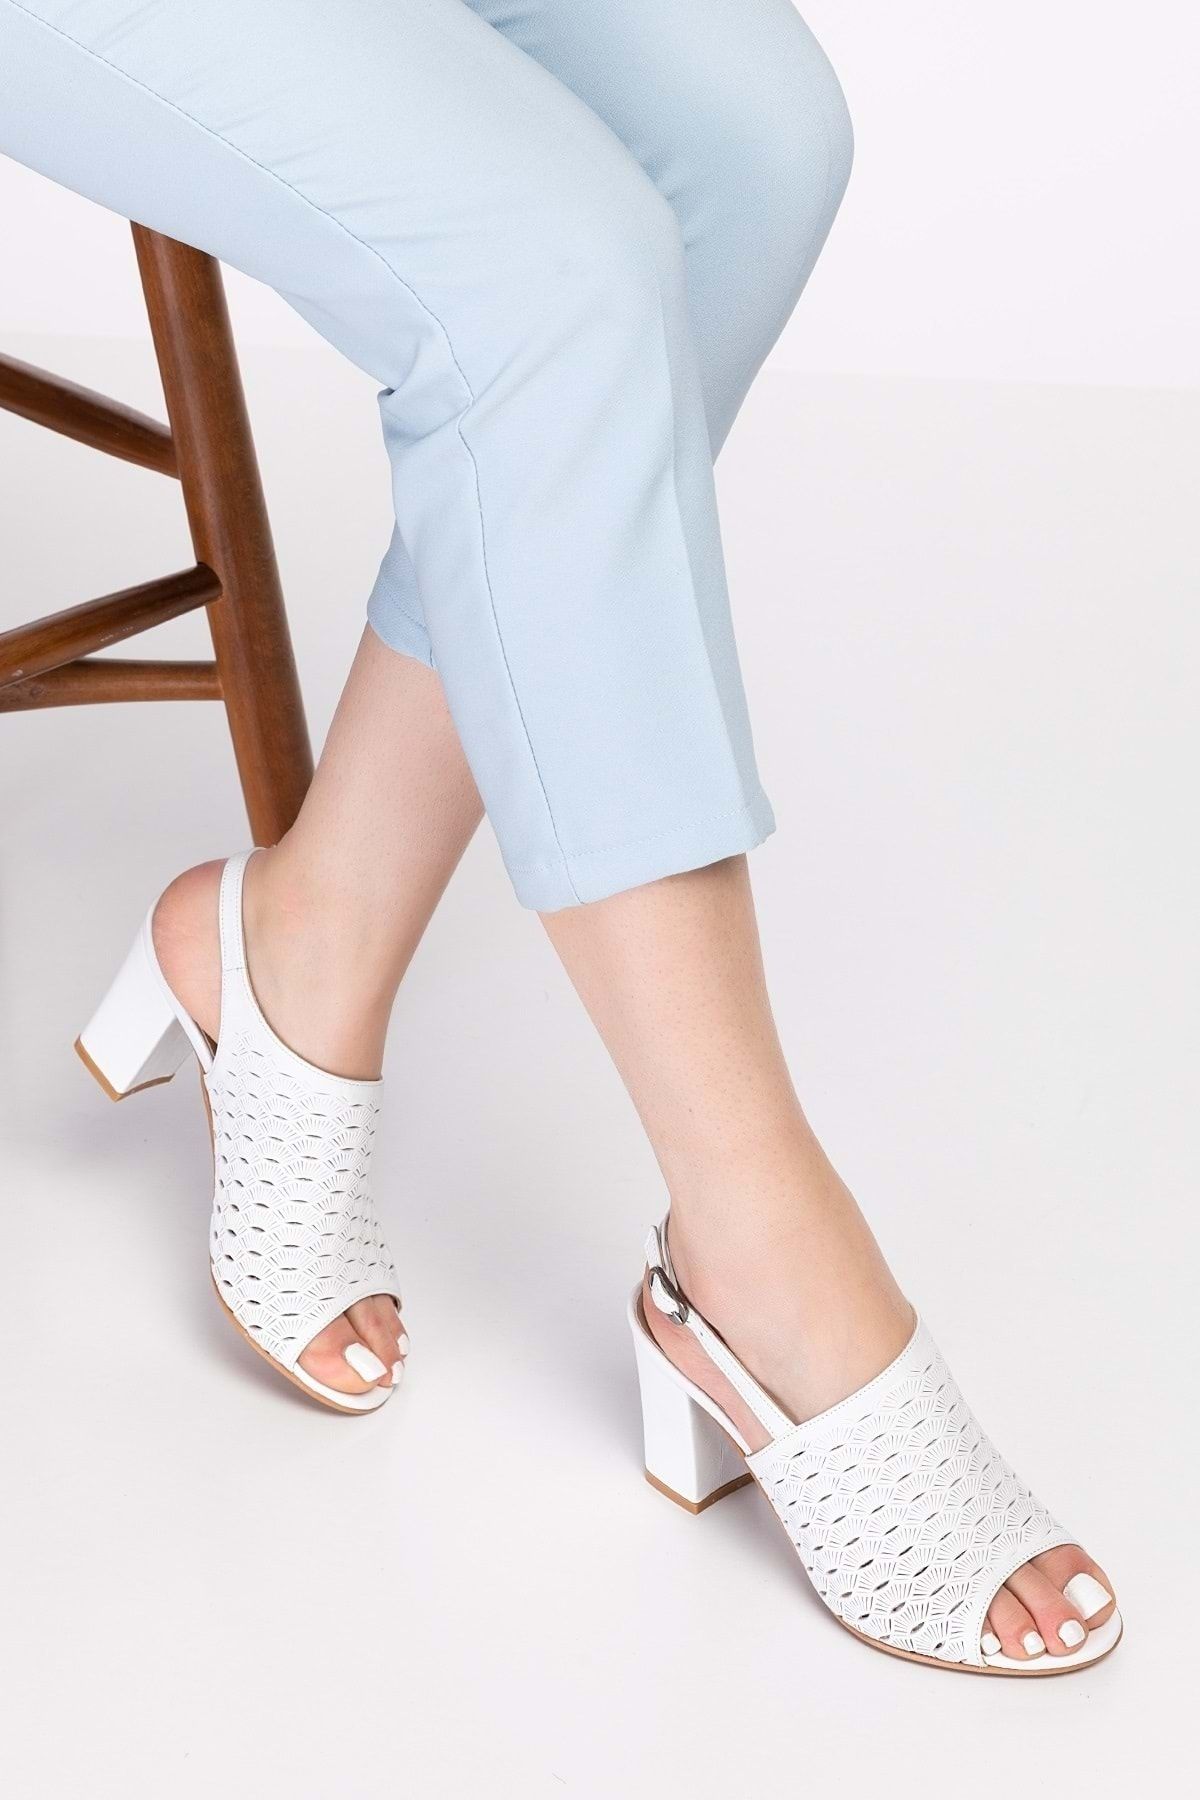 Gondol Kadın Hakiki Deri Lazer Kesim Klasik Topuklu Ayakkabı Şhn.835 - Beyaz - 41